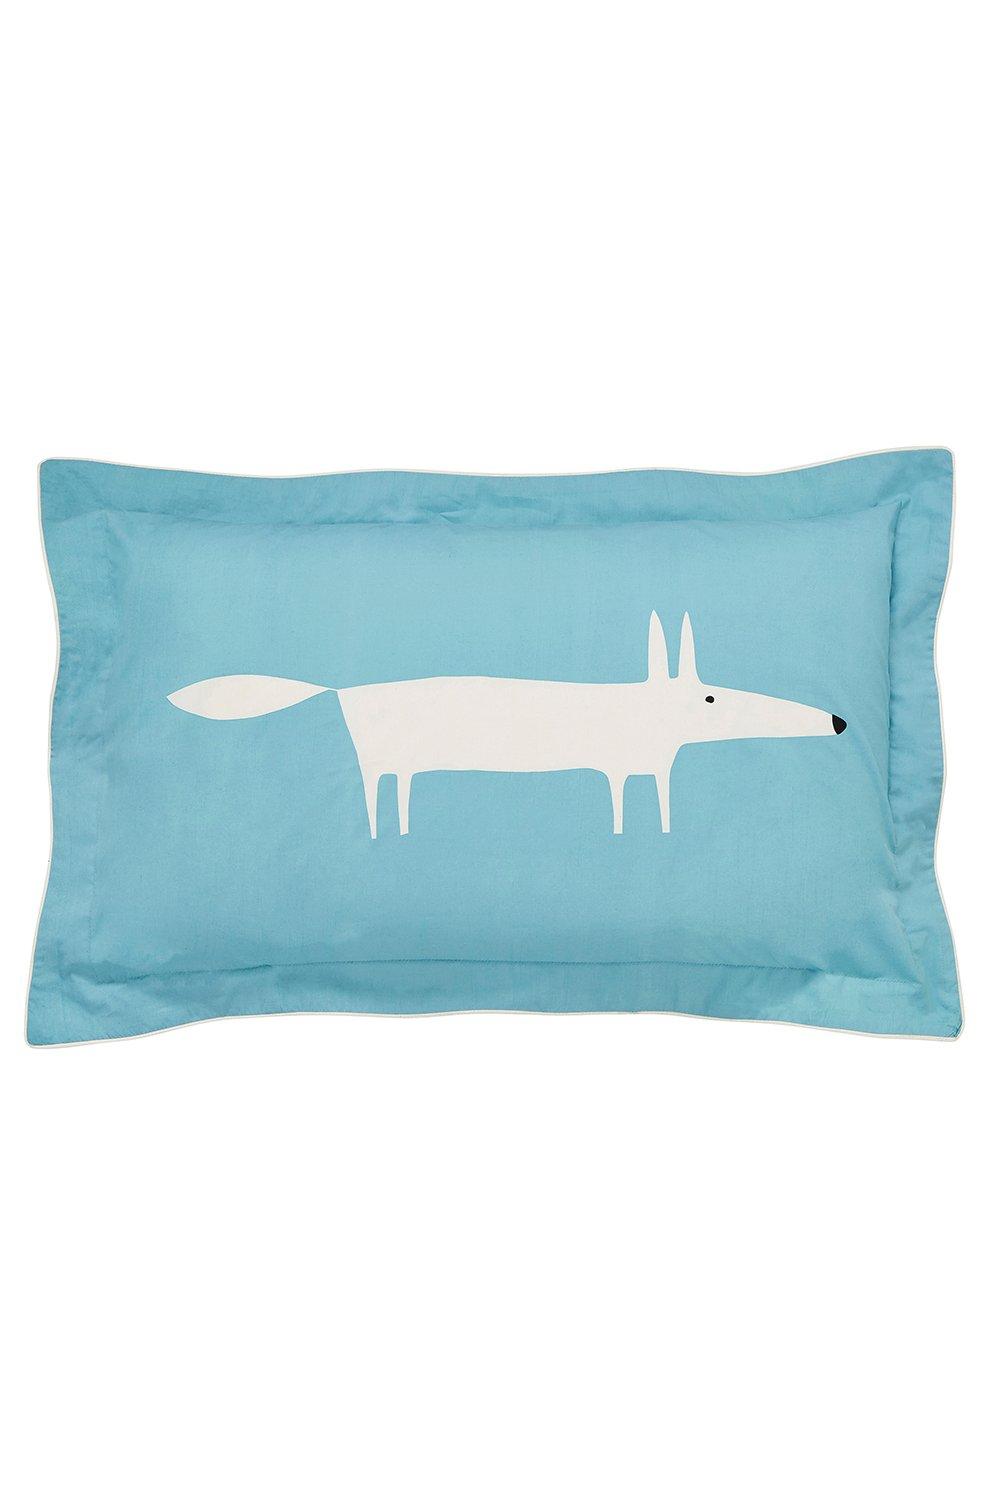 Scion - Mr Fox Oxford Pillowcase - Teal